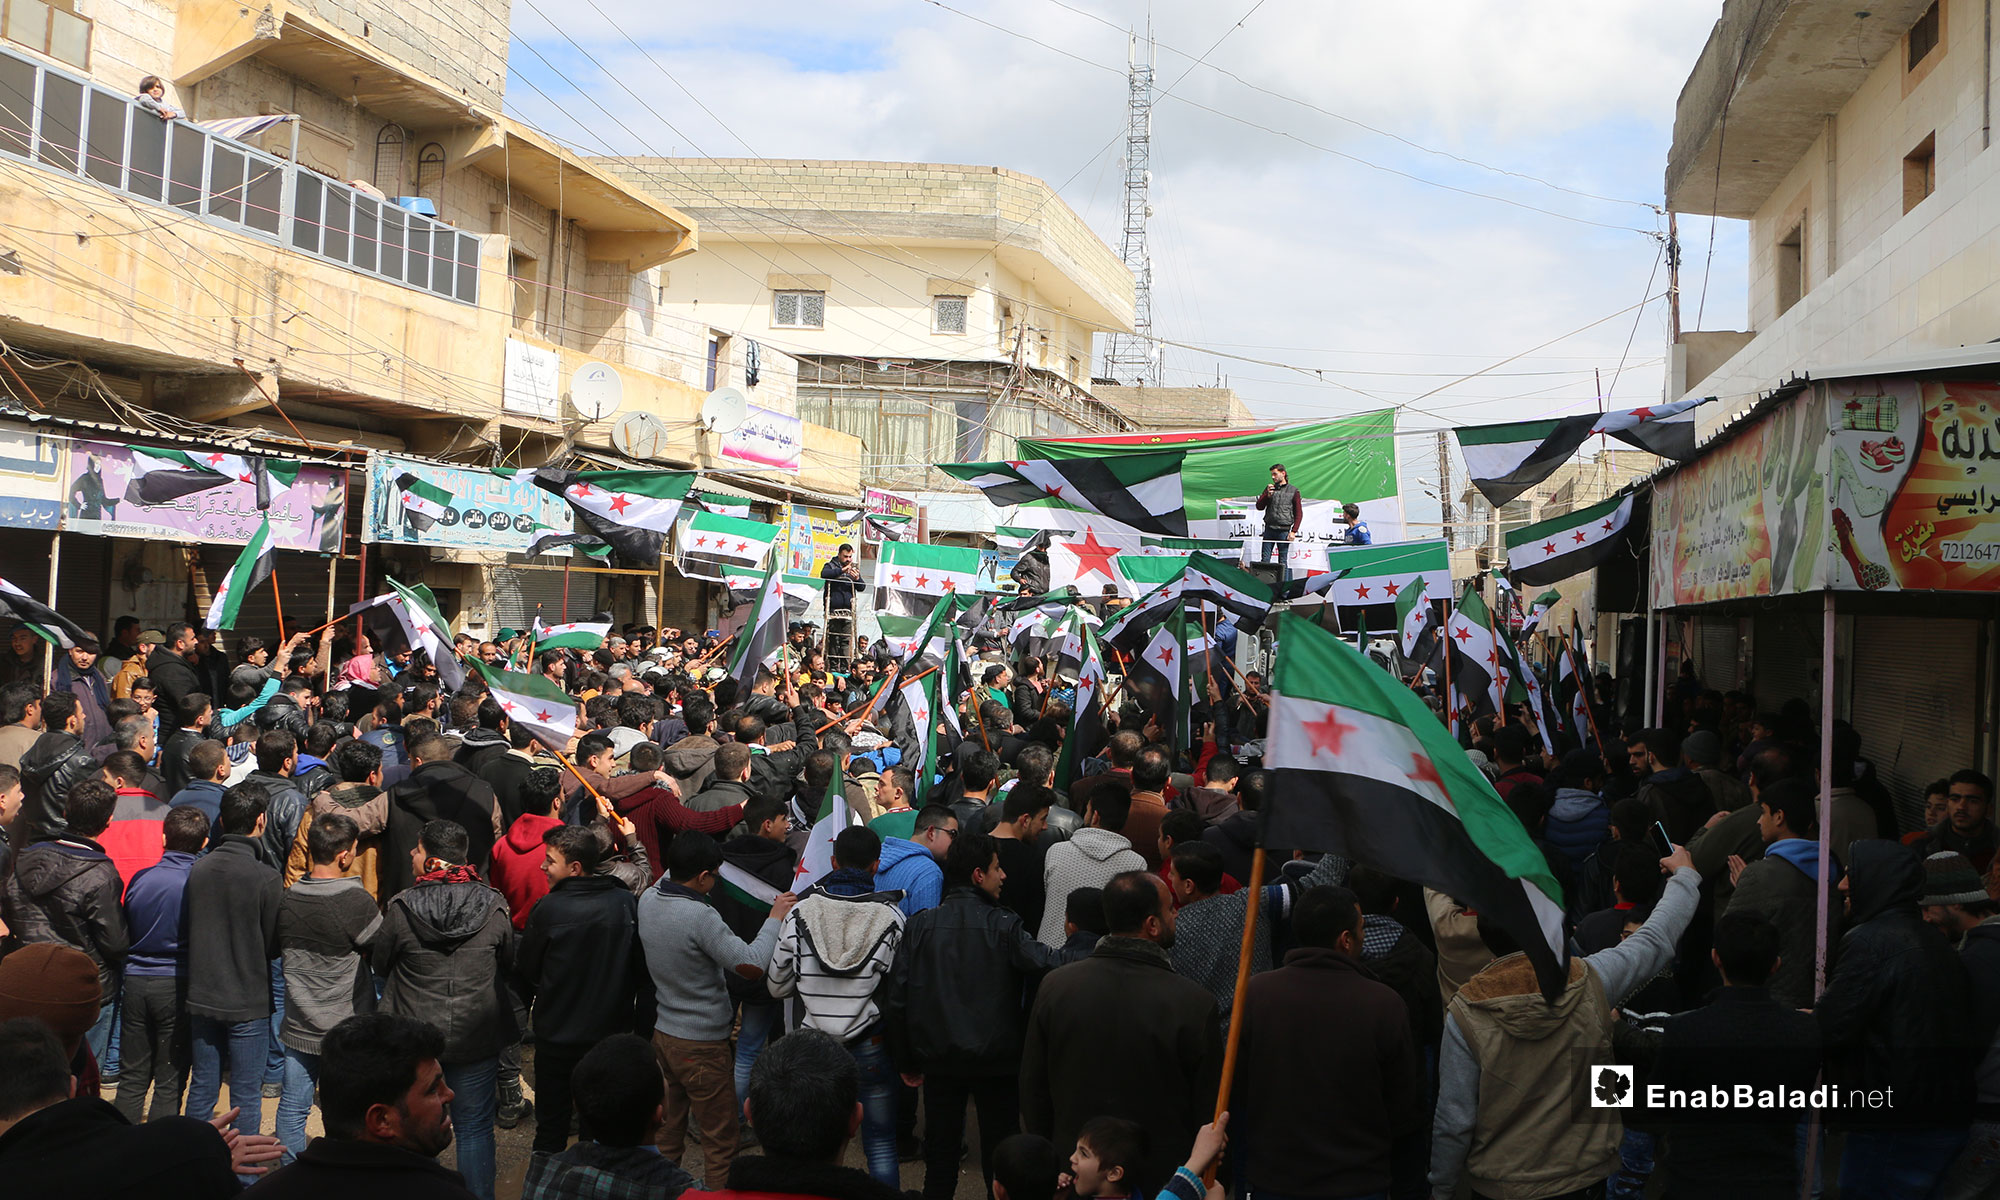 في الذكرى الثامنة للثورة السورية مظاهرة في بلدة مارع بريف حلب الشمالي - 15 من آذار 2019 (عنب بلدي)